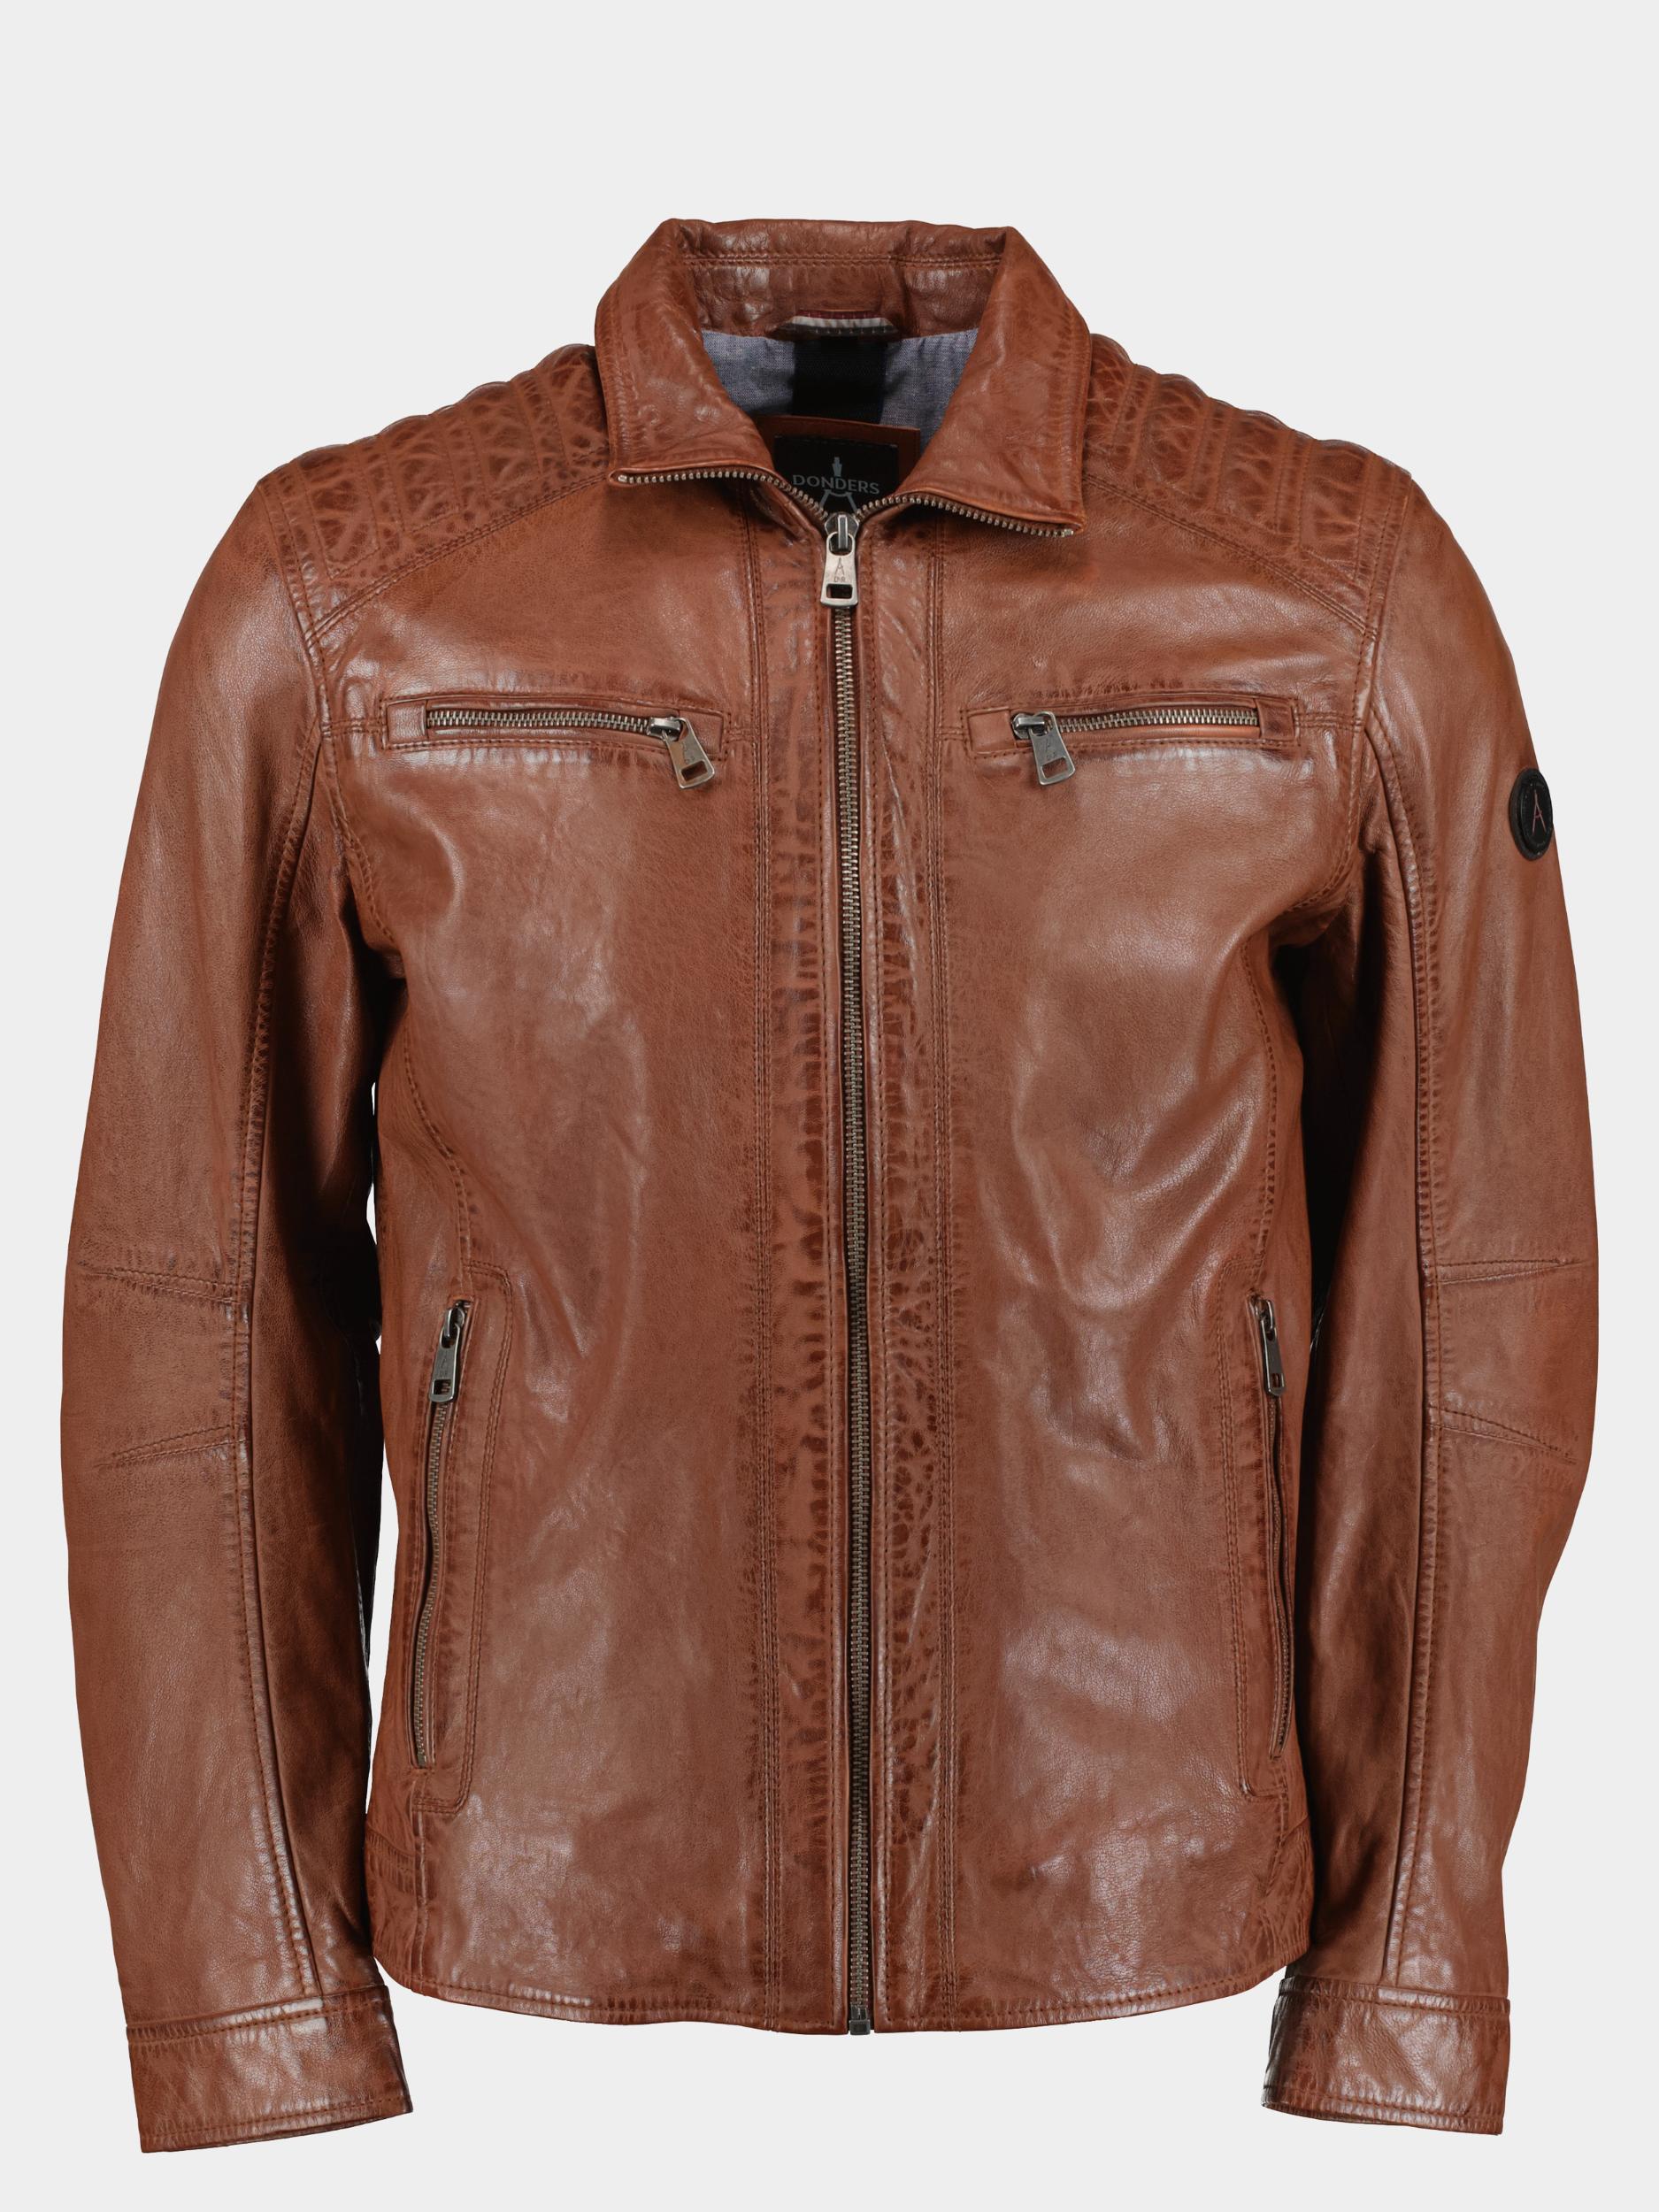 Afbeelding van Donders 1860 Lederen jack leather jacket 52347/451